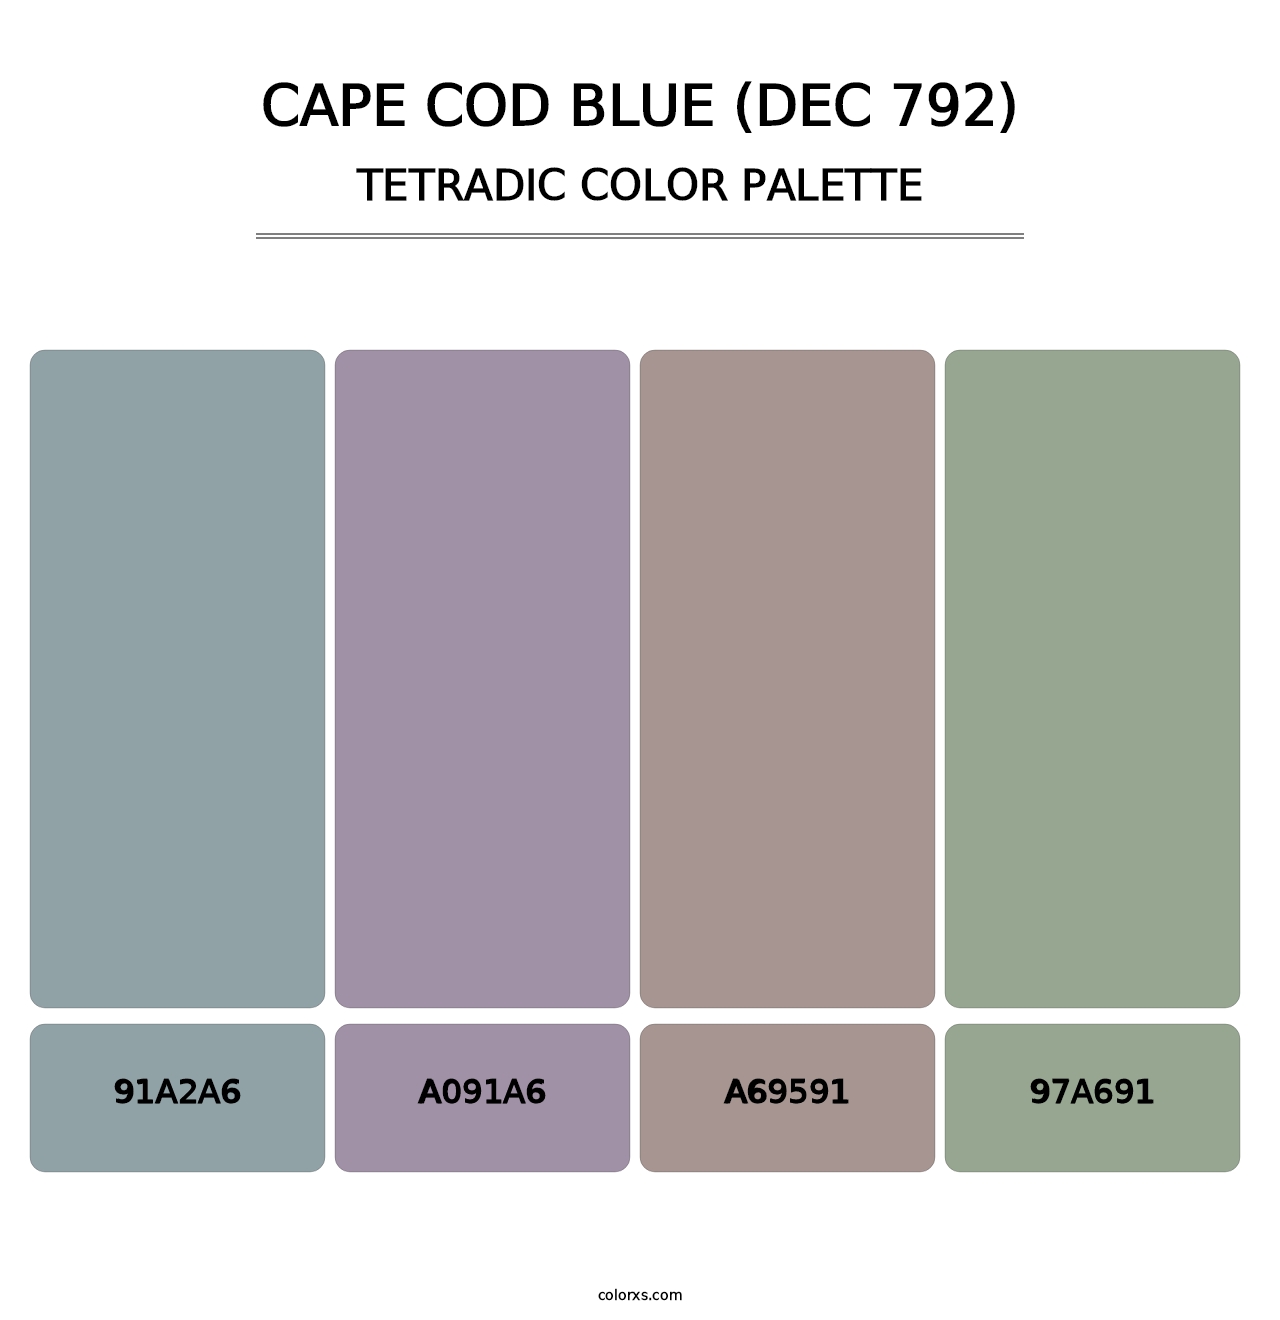 Cape Cod Blue (DEC 792) - Tetradic Color Palette